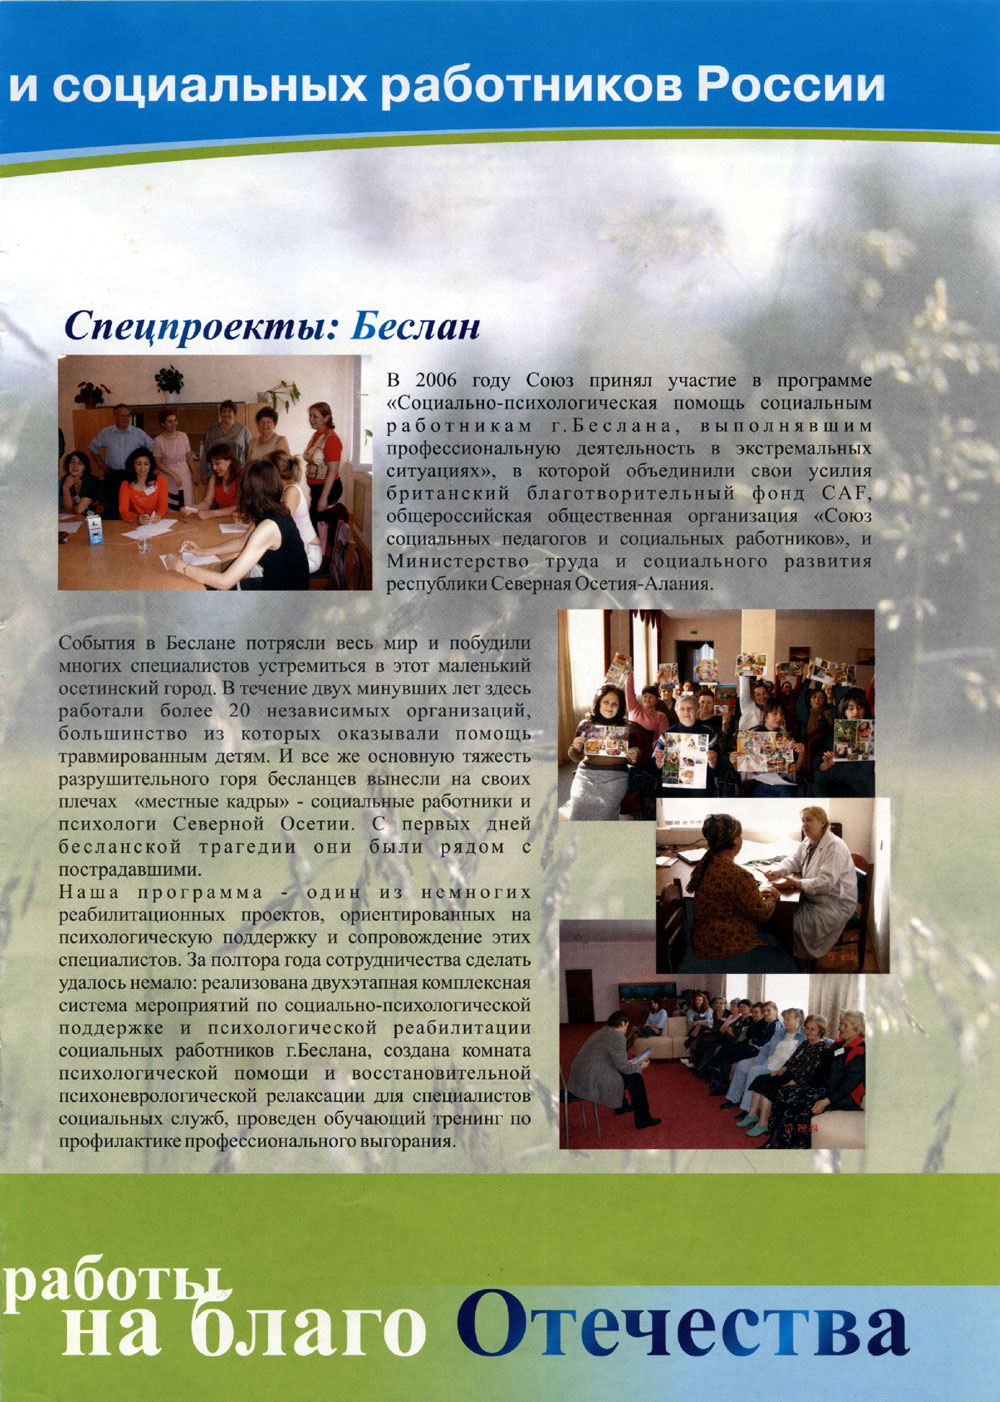 Ассоциации социальных педагогов и социальных работников России